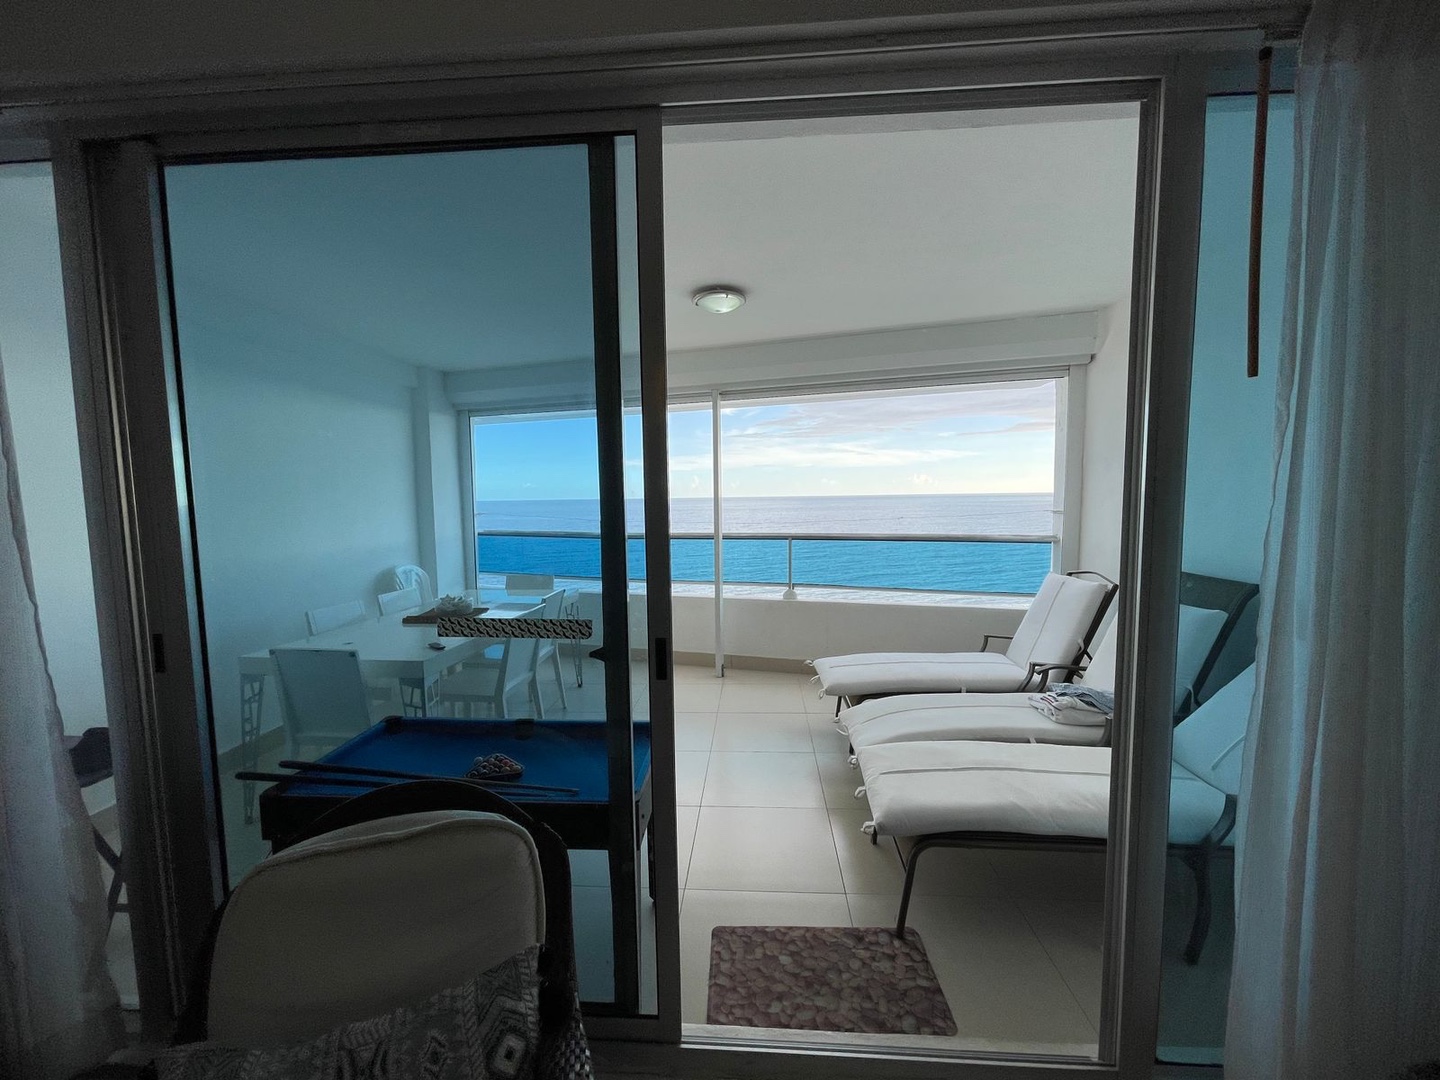 apartamentos - Venta d apartamento en Juan dolio piso 16 con vista al mar zona turística  1